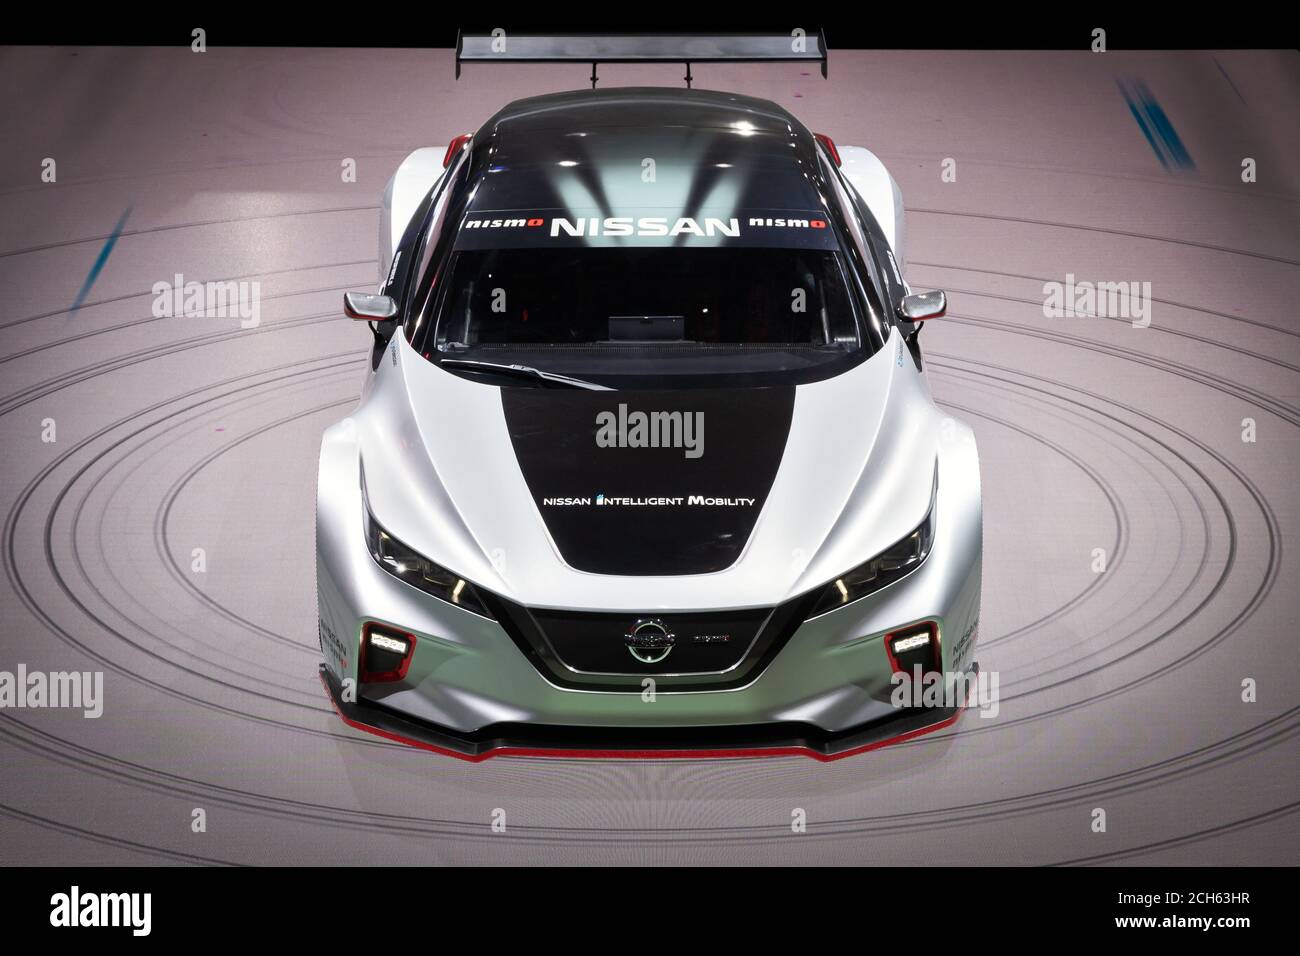 Nissan Nismo Stockfotos und -bilder Kaufen - Alamy